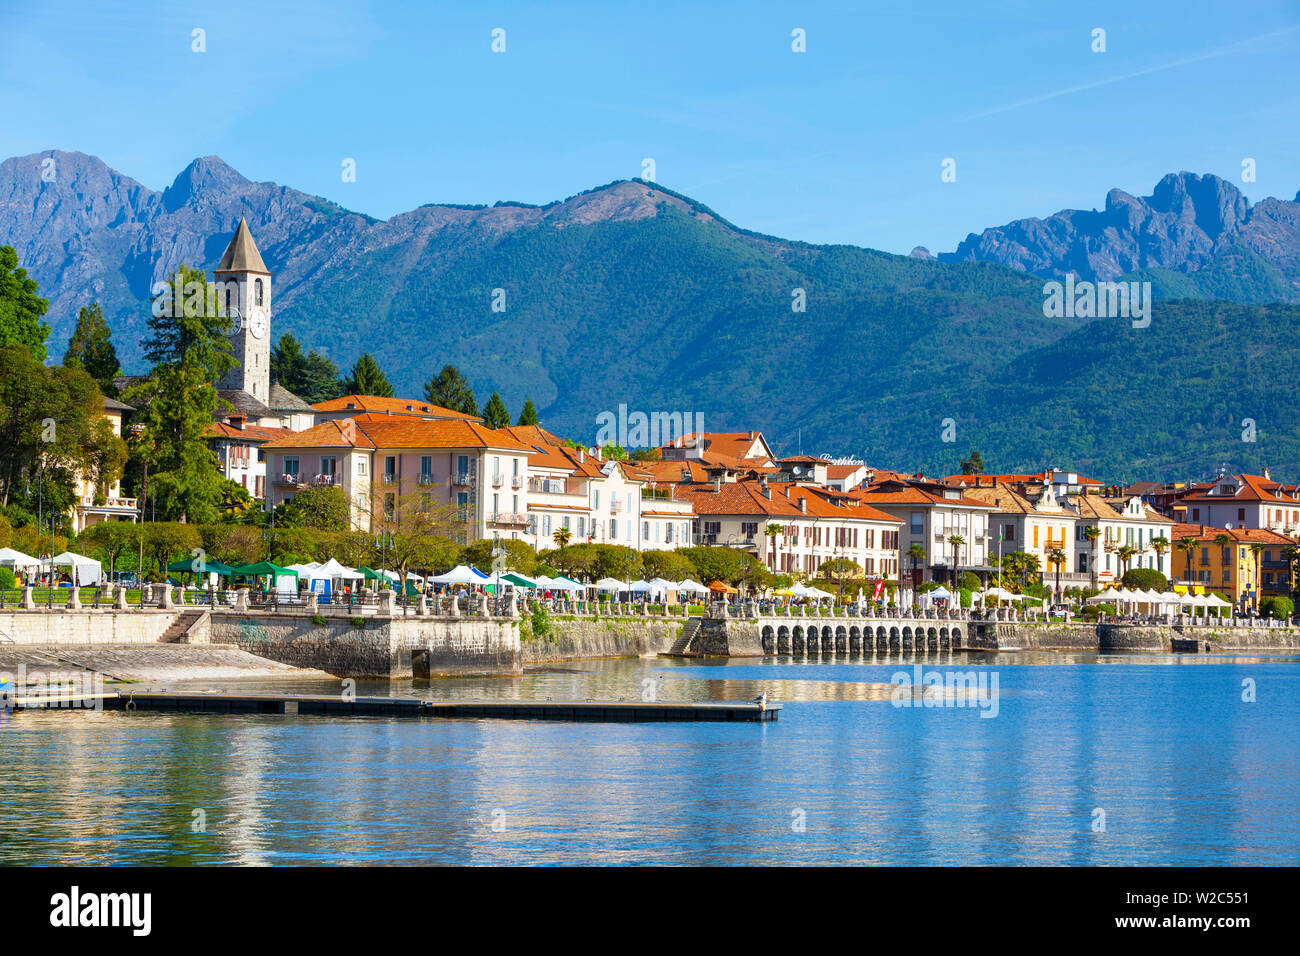 The idyllic lakeside village of Baveno, Lake Maggiore, Piedmont, Italy Stock Photo